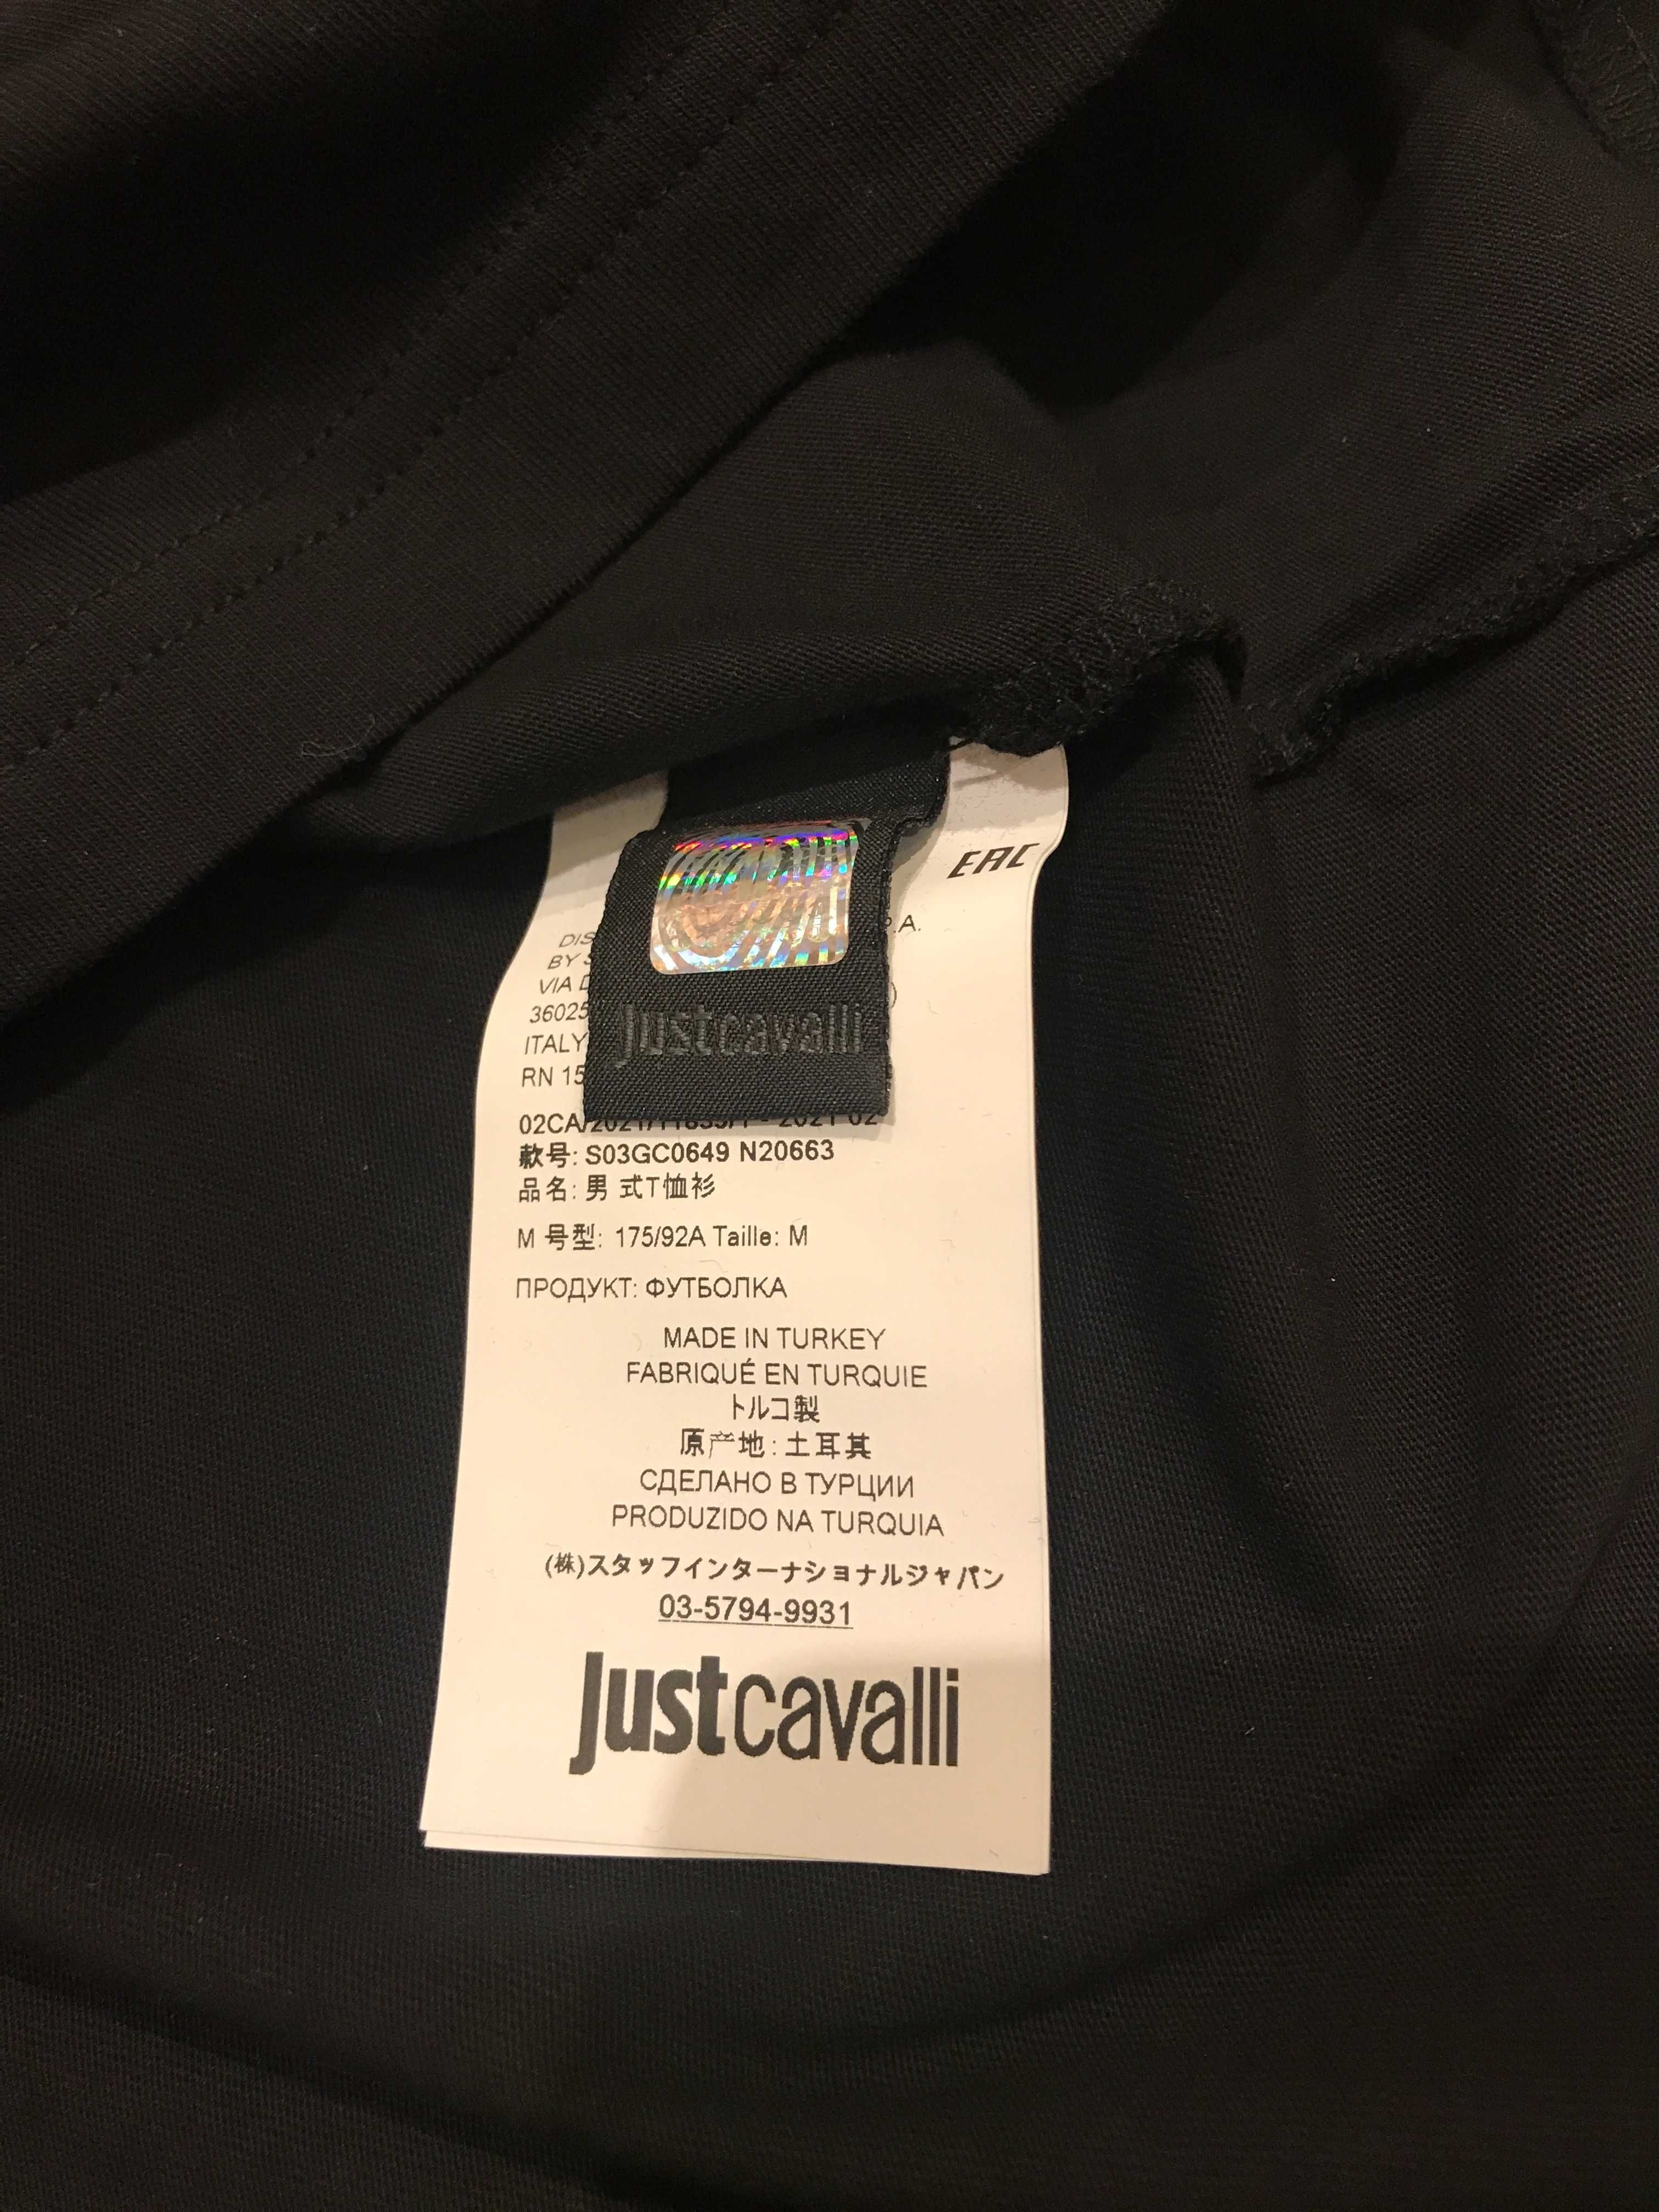 Just Cavalli, ОРИГИНАЛНА тениска с дълъг ръкав, Размери: S, M и XL